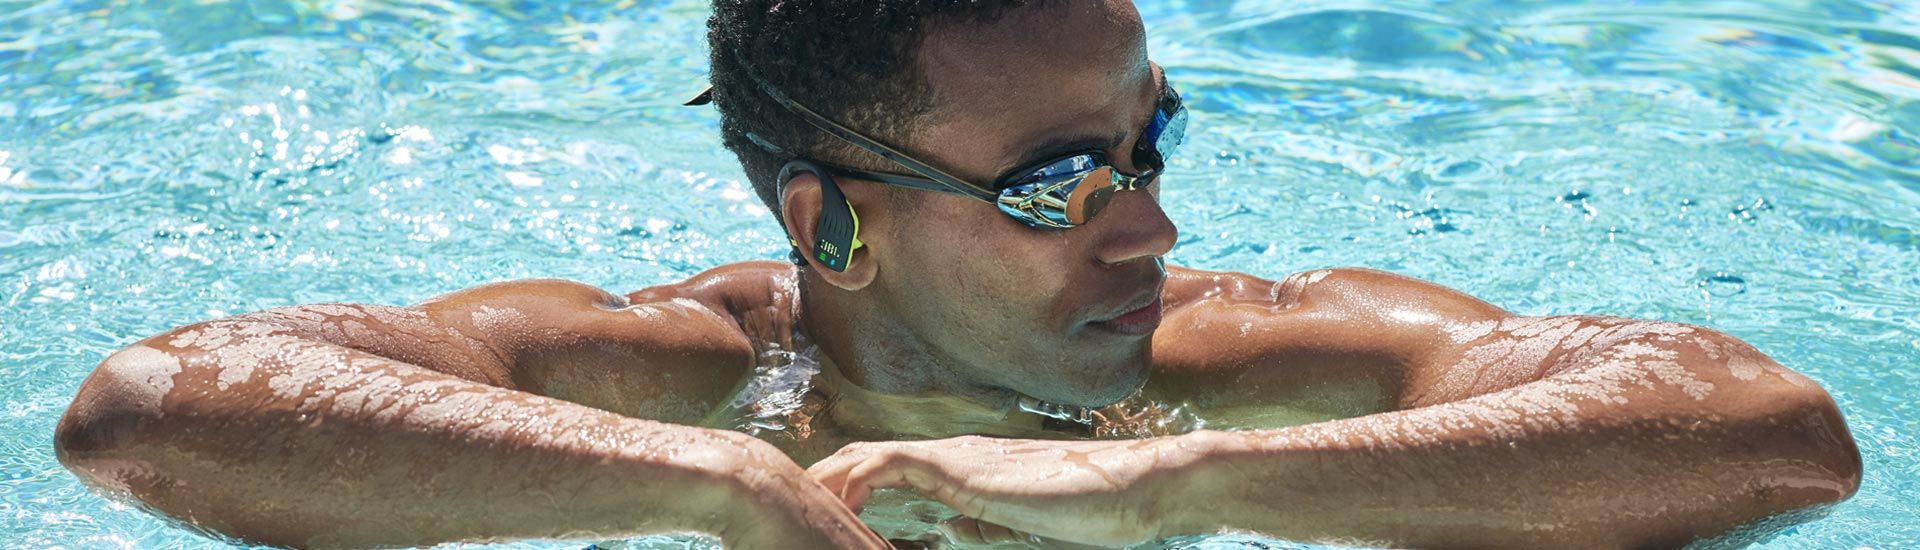 شناگر مرد با هندزفری جی بی ال و عینک مخصوص شنا درون آب